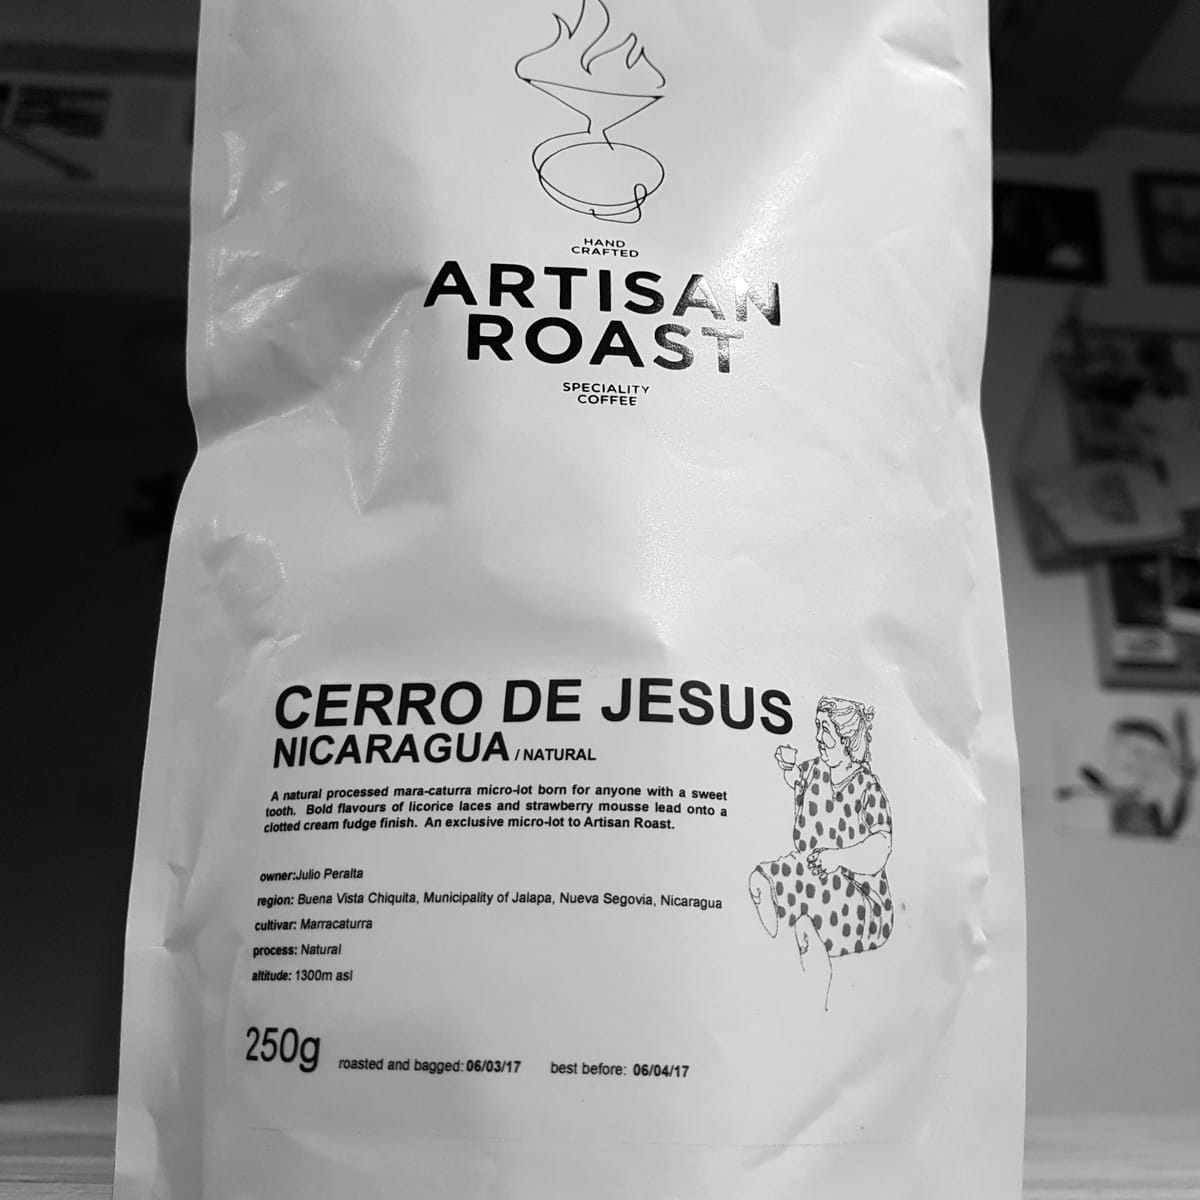 NICARAGUA CERRO DE JESUS, ARTISAN ROAST